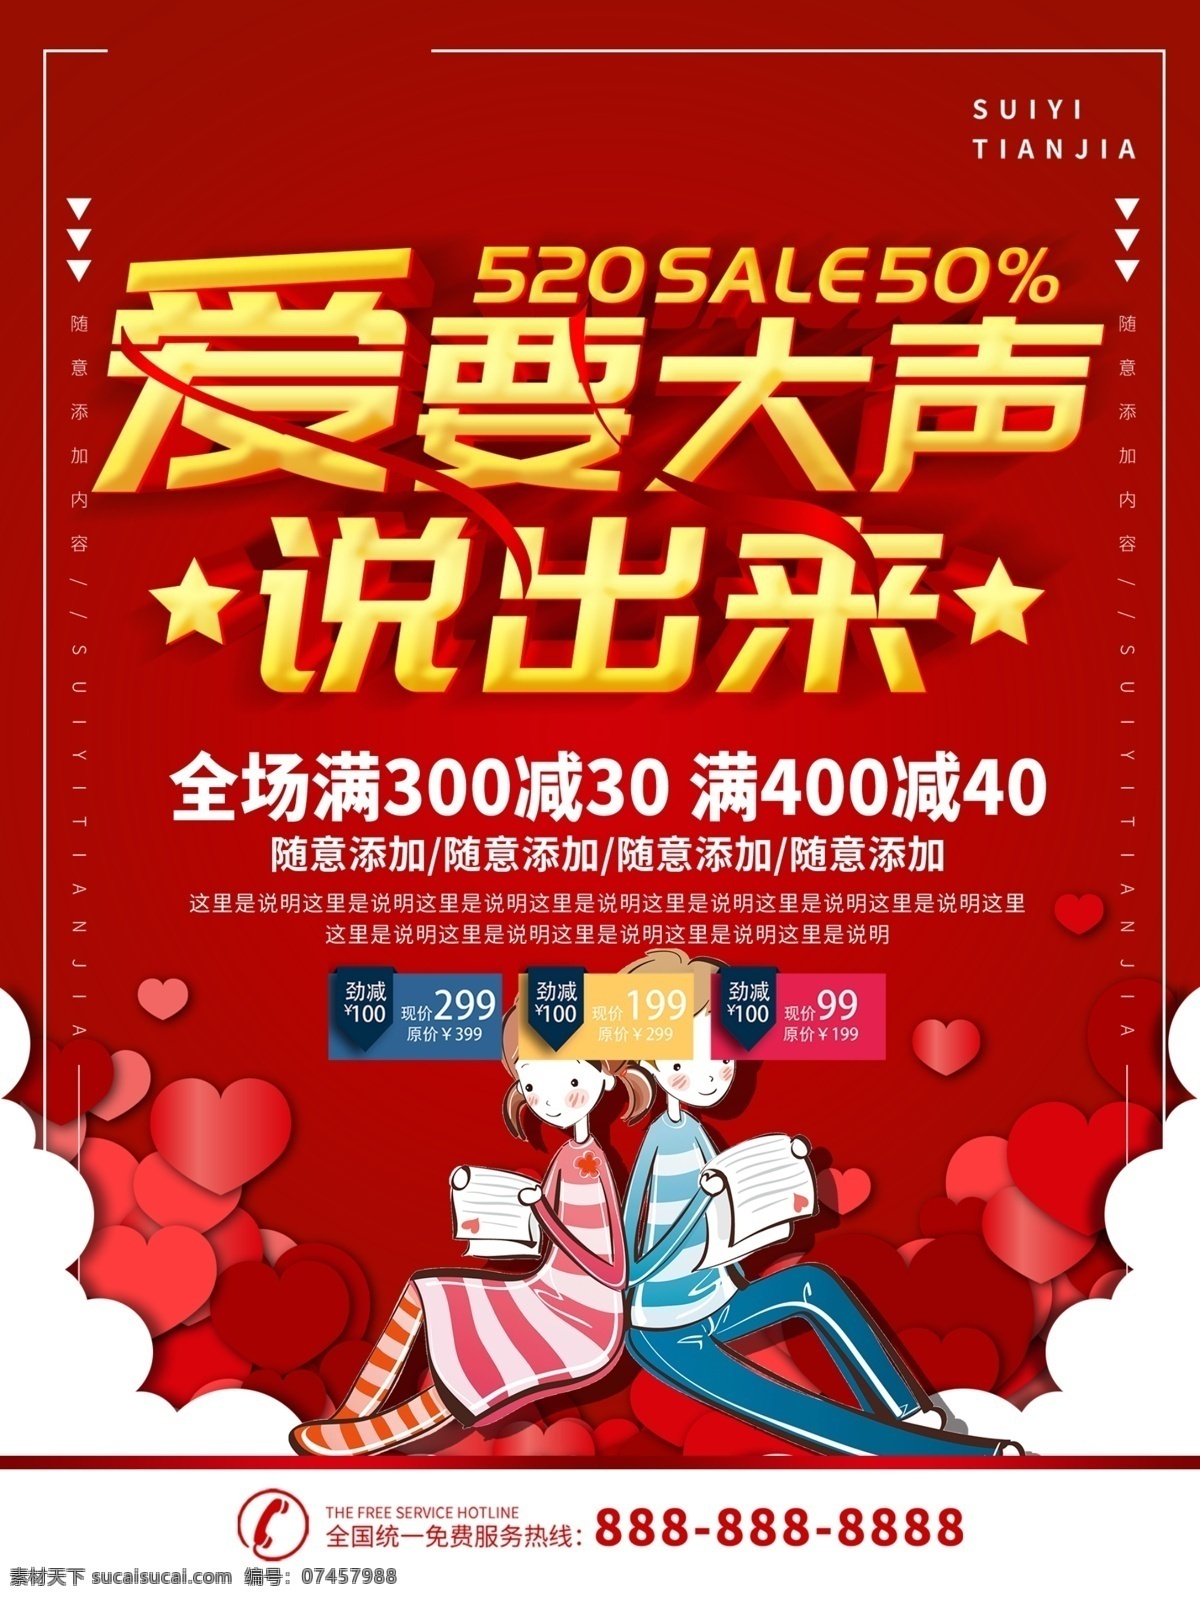 简约 红色 立体 字 520 促销 520海报 爱情 海报 红心 立体字 情侣 情人节 宣传